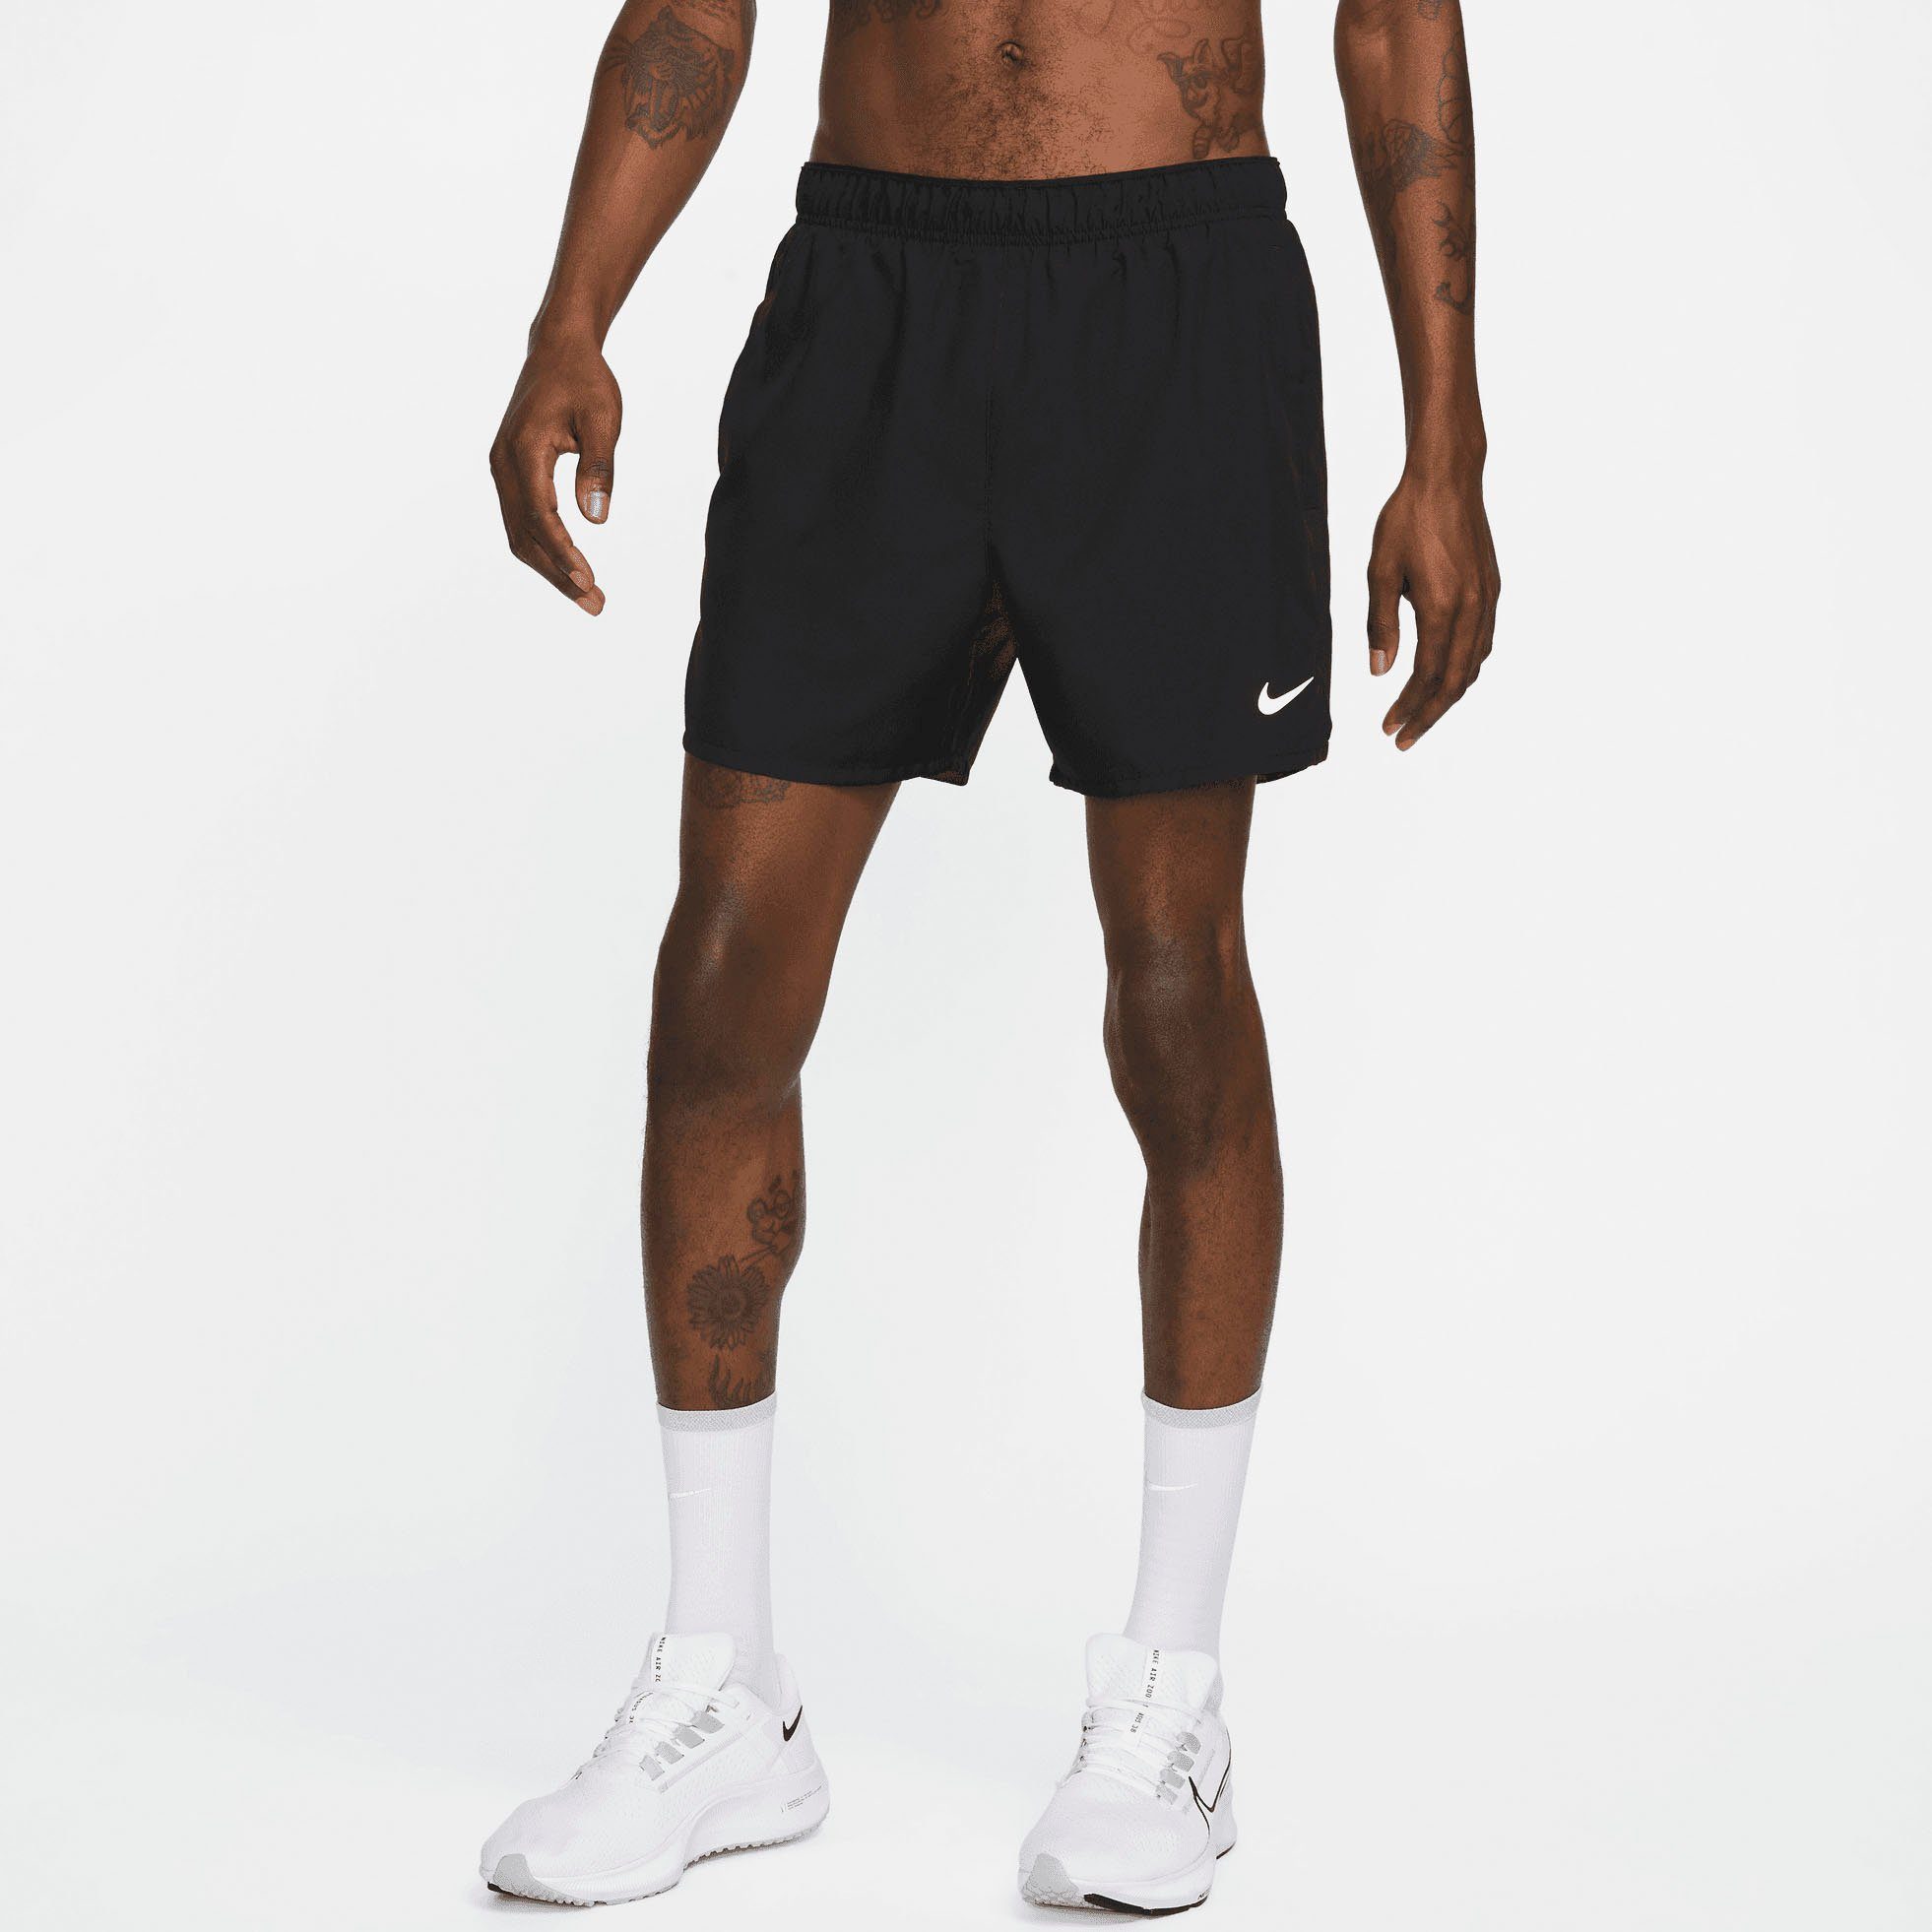 Nike Laufshorts Dri-FIT Challenger Men's " Brief-Lined Running Шорты